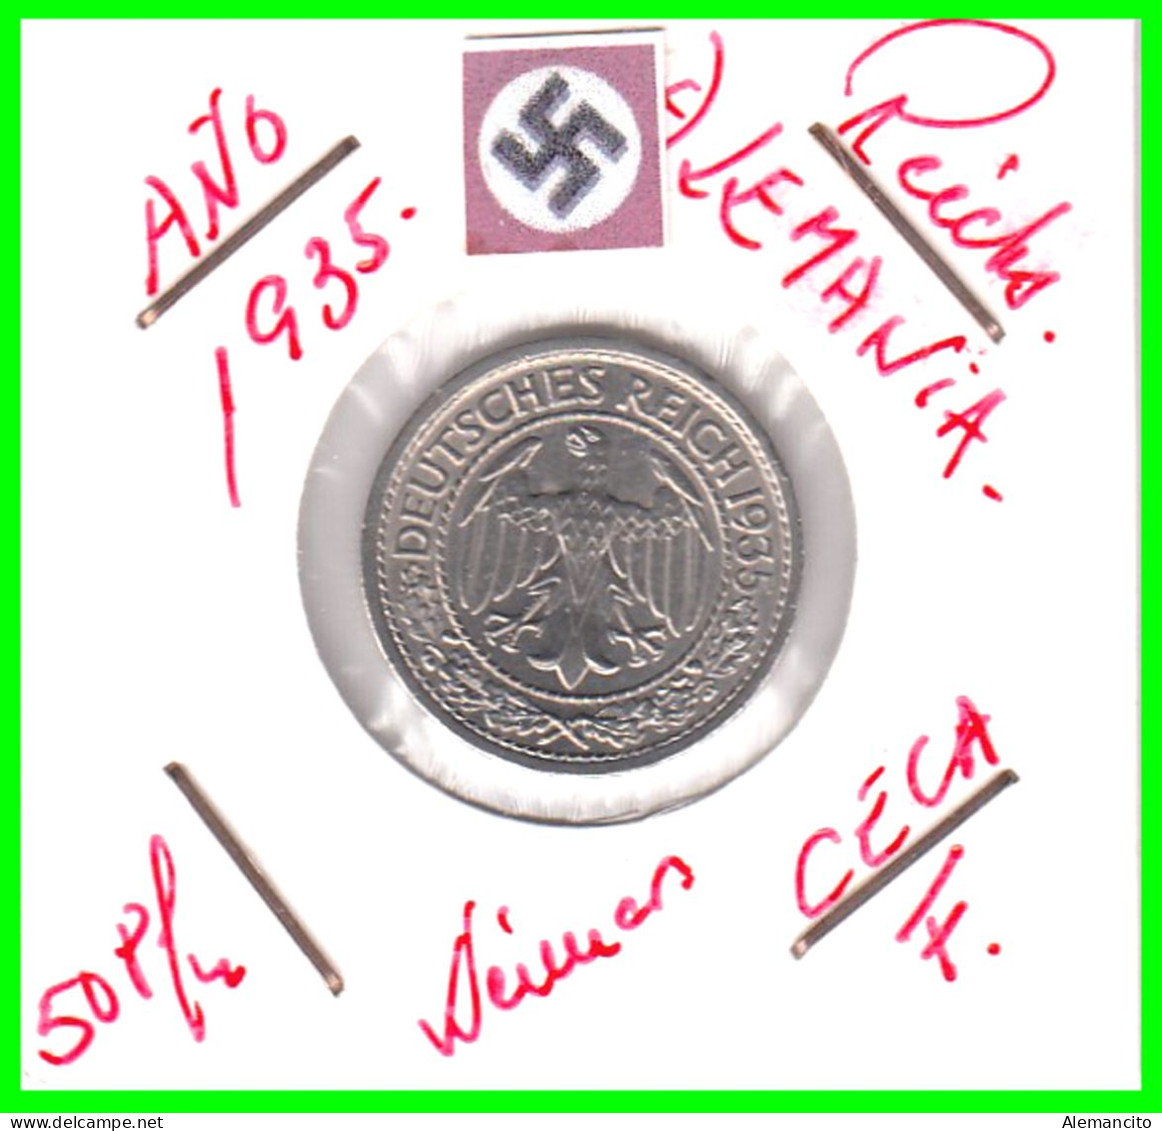 GERMANY REPÚBLICA DE WEIMAR 50 REICHSPFENNIG ( 1935 CECA - F )  (REICHSPFENNIG KM # 40 - 50 Rentenpfennig & 50 Reichspfennig